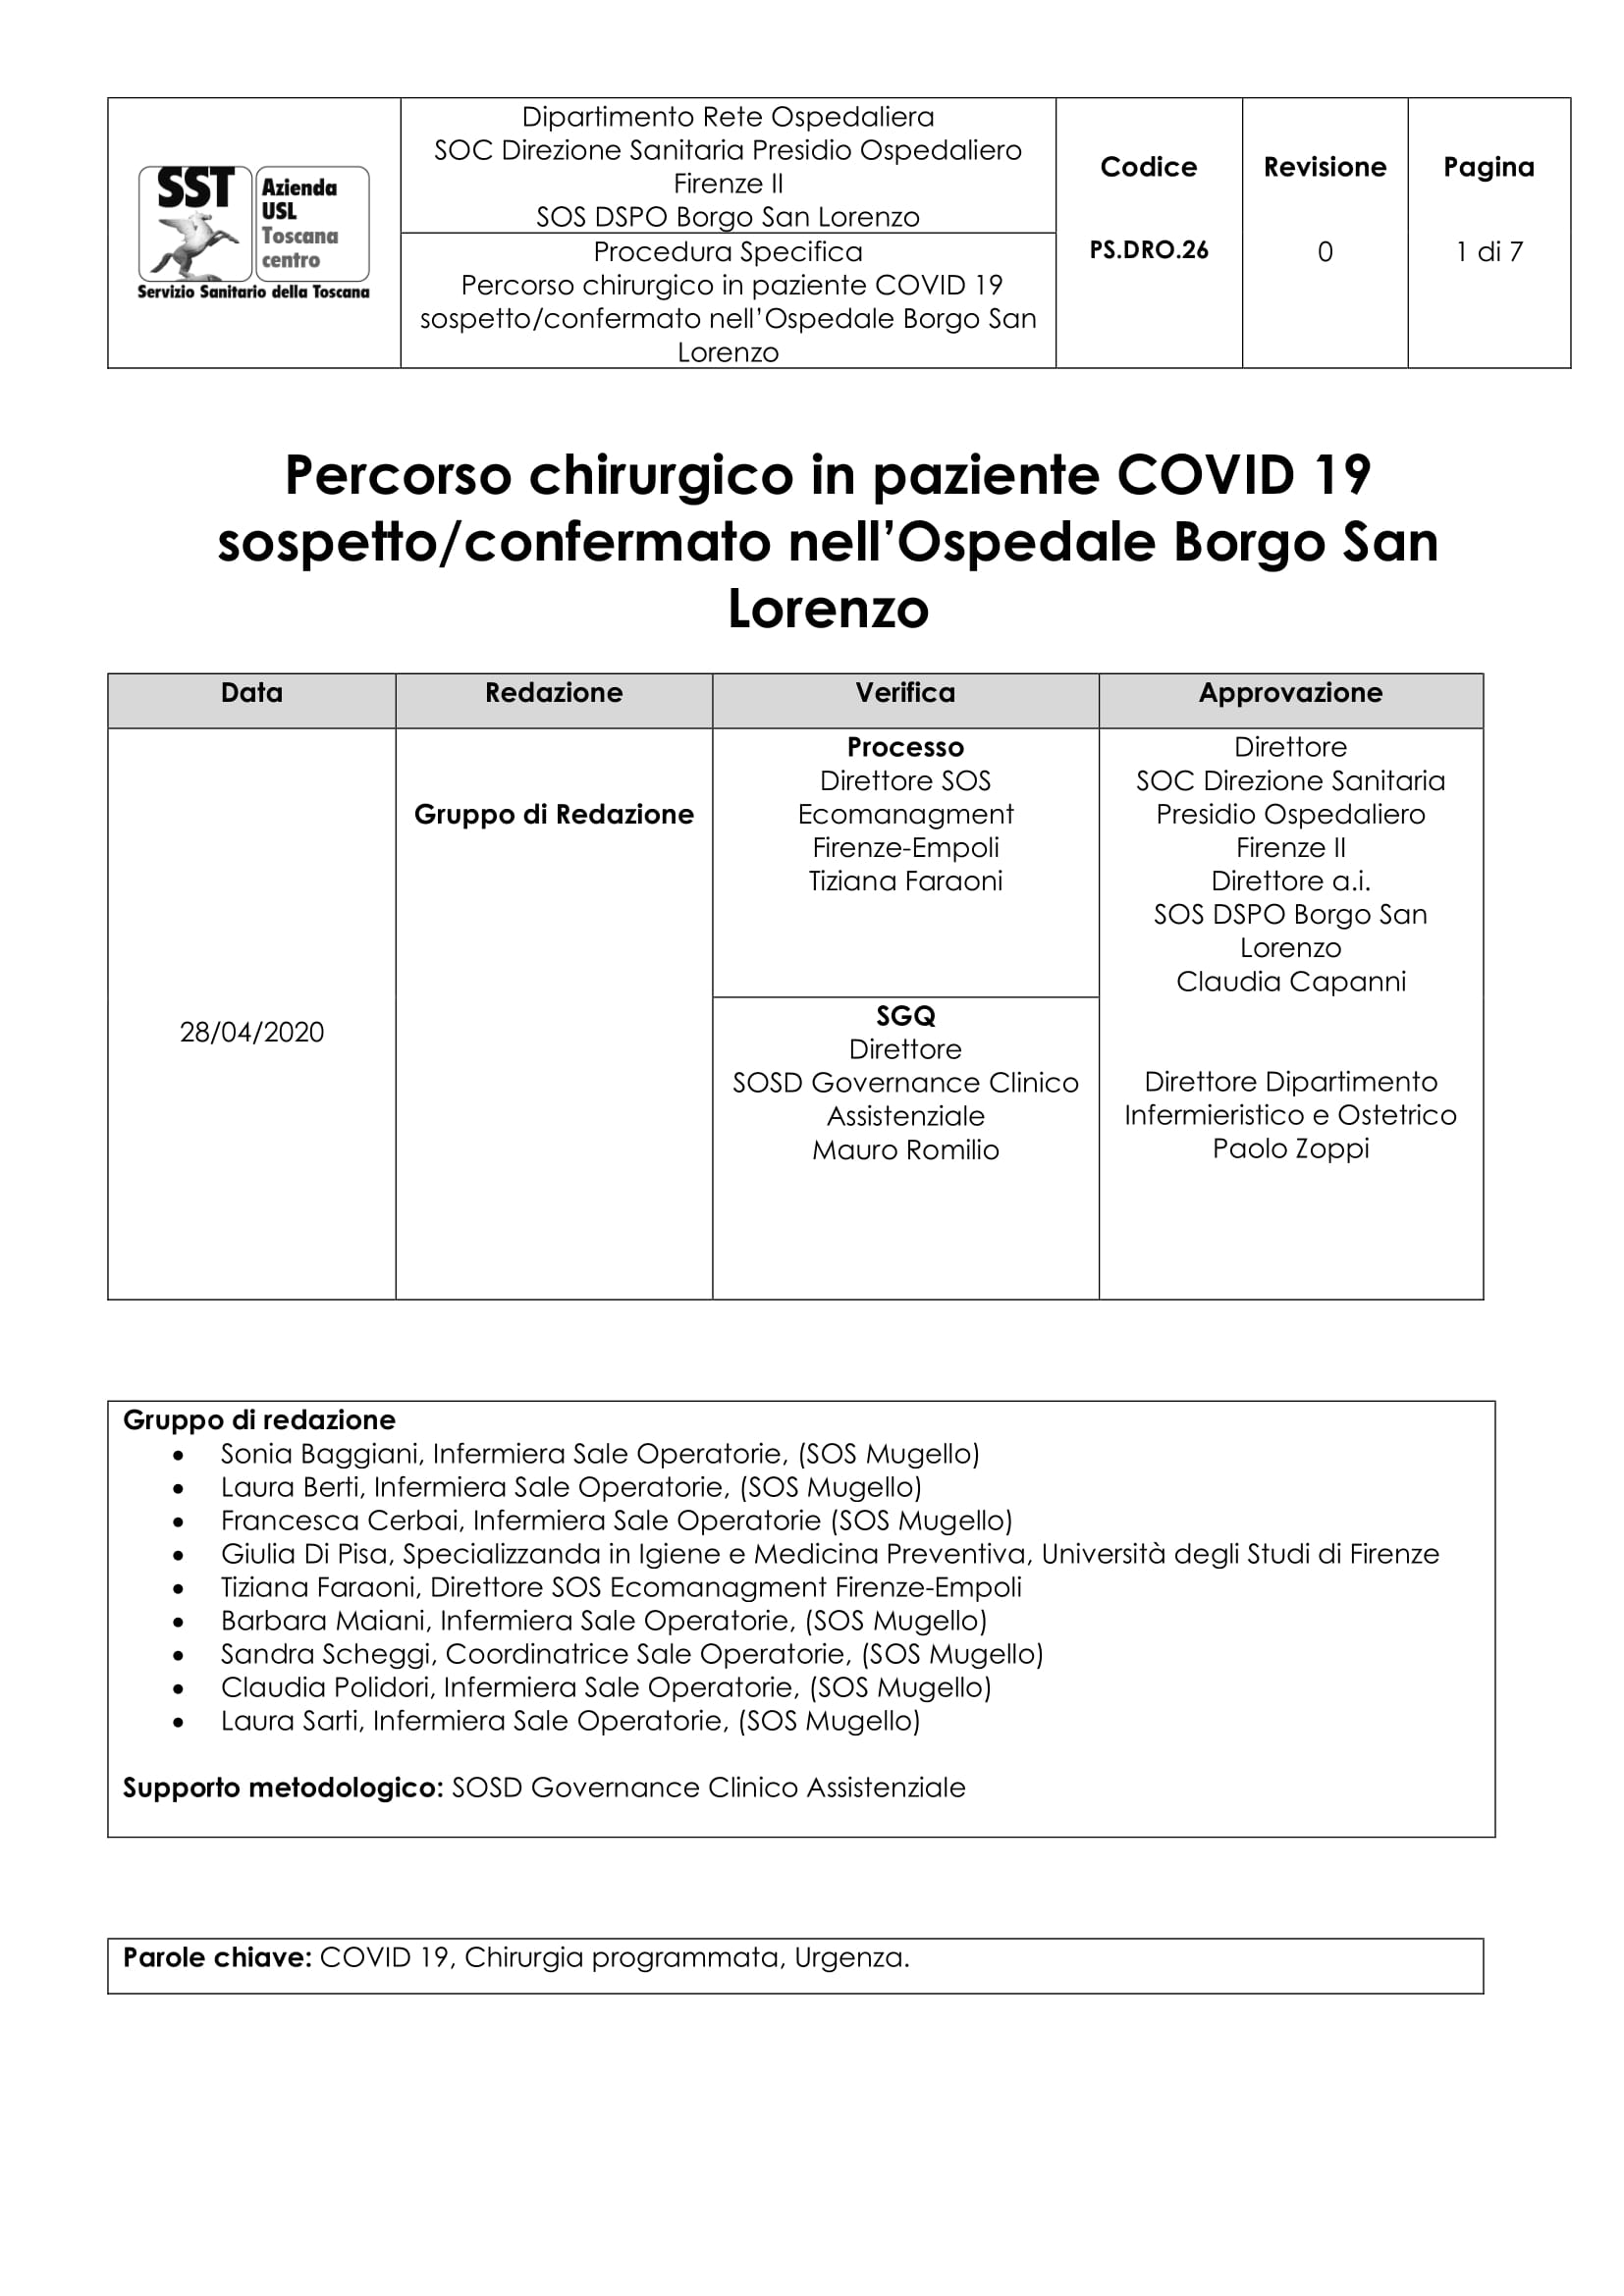 PS.DRO.26 Percorso chirurgico in paziente COVID 19 sospetto/confermato nell’Ospedale Borgo San Lorenzo